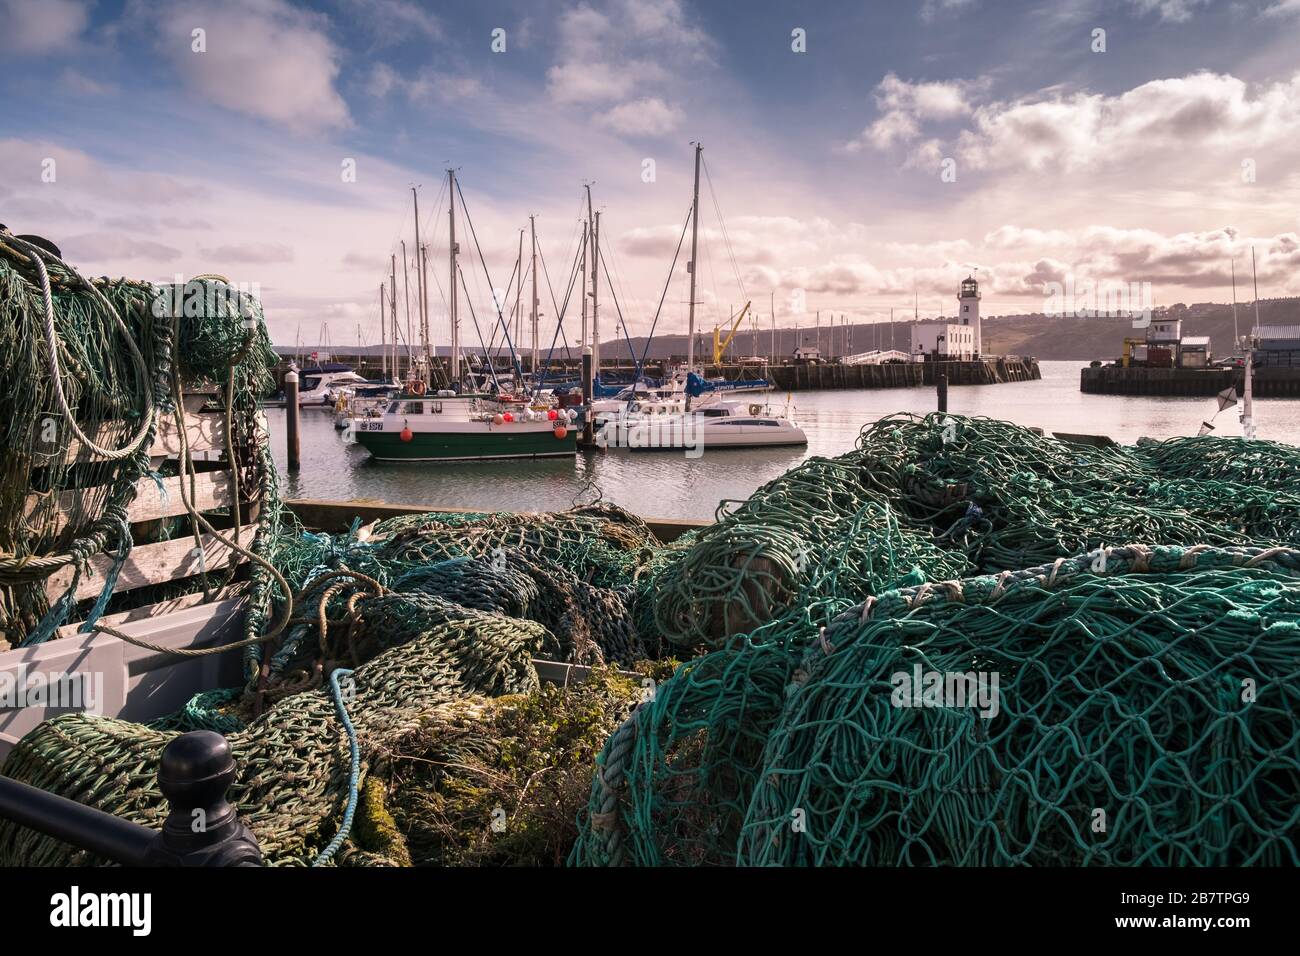 Puerto de Scarborough, una ciudad costera tradicional en la costa norte de Yorkshire, Inglaterra, Reino Unido Foto de stock